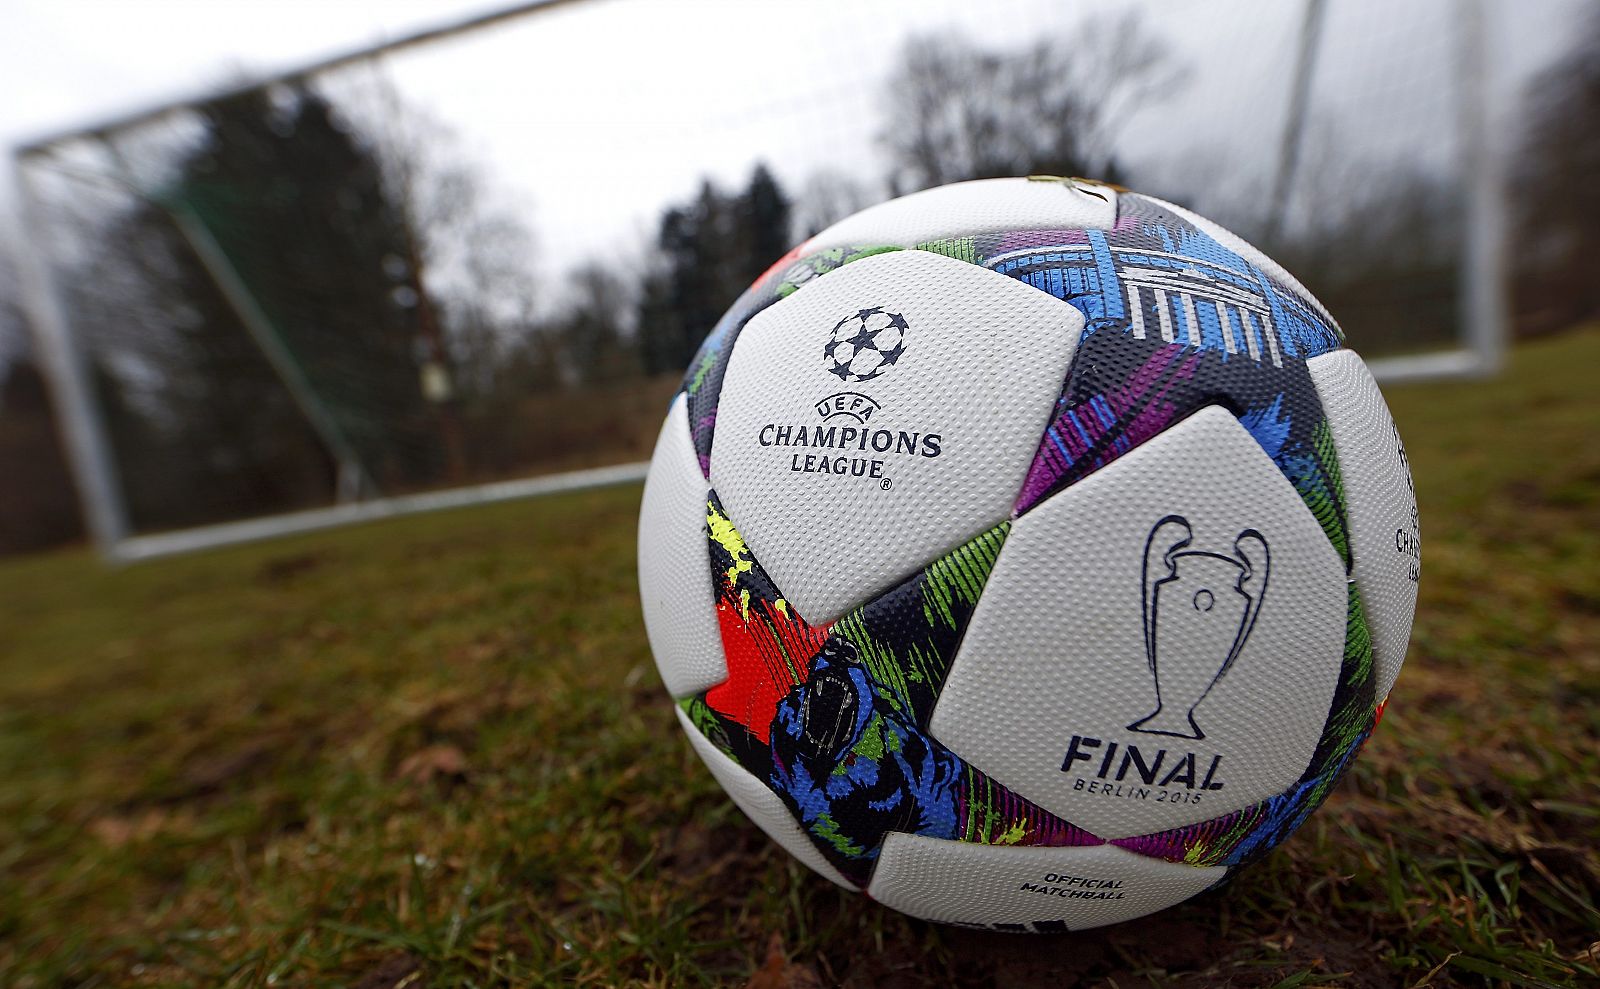 Balón con el que se jugará la final de la Champions 2014-2015.